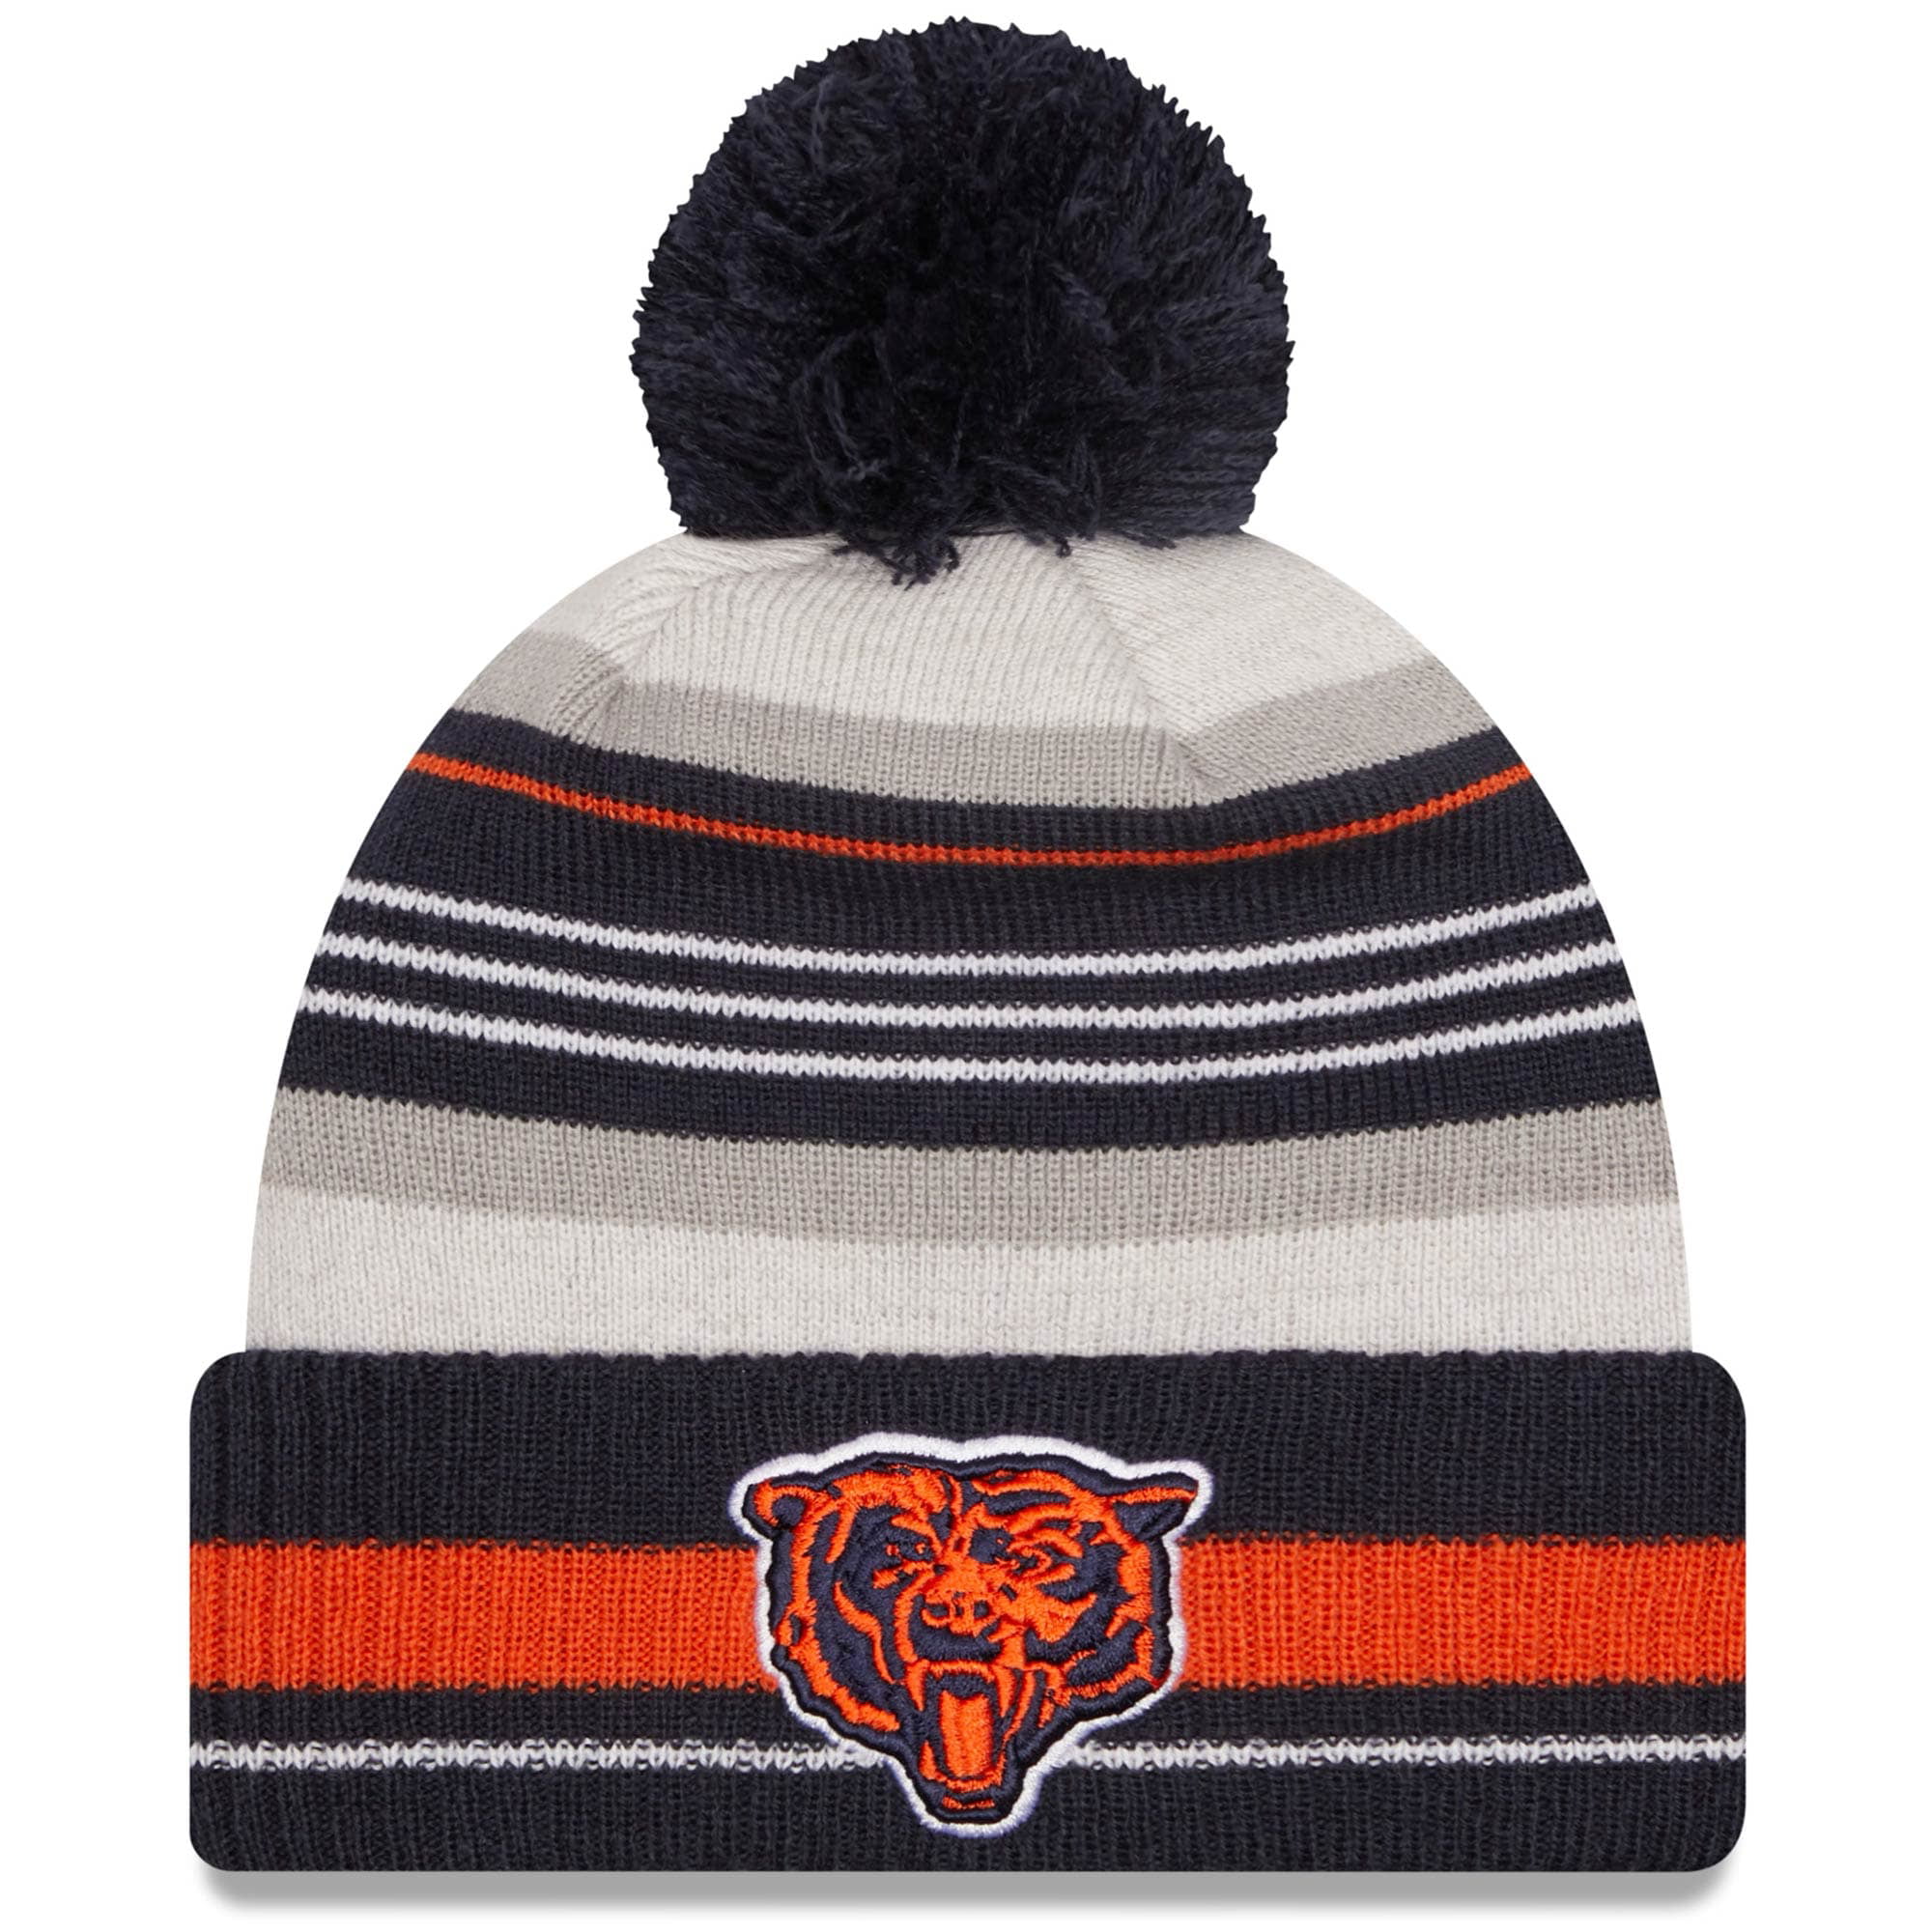 Split Logo Chicago Bears Reversible Scarf Knit Winter Neck NEW 